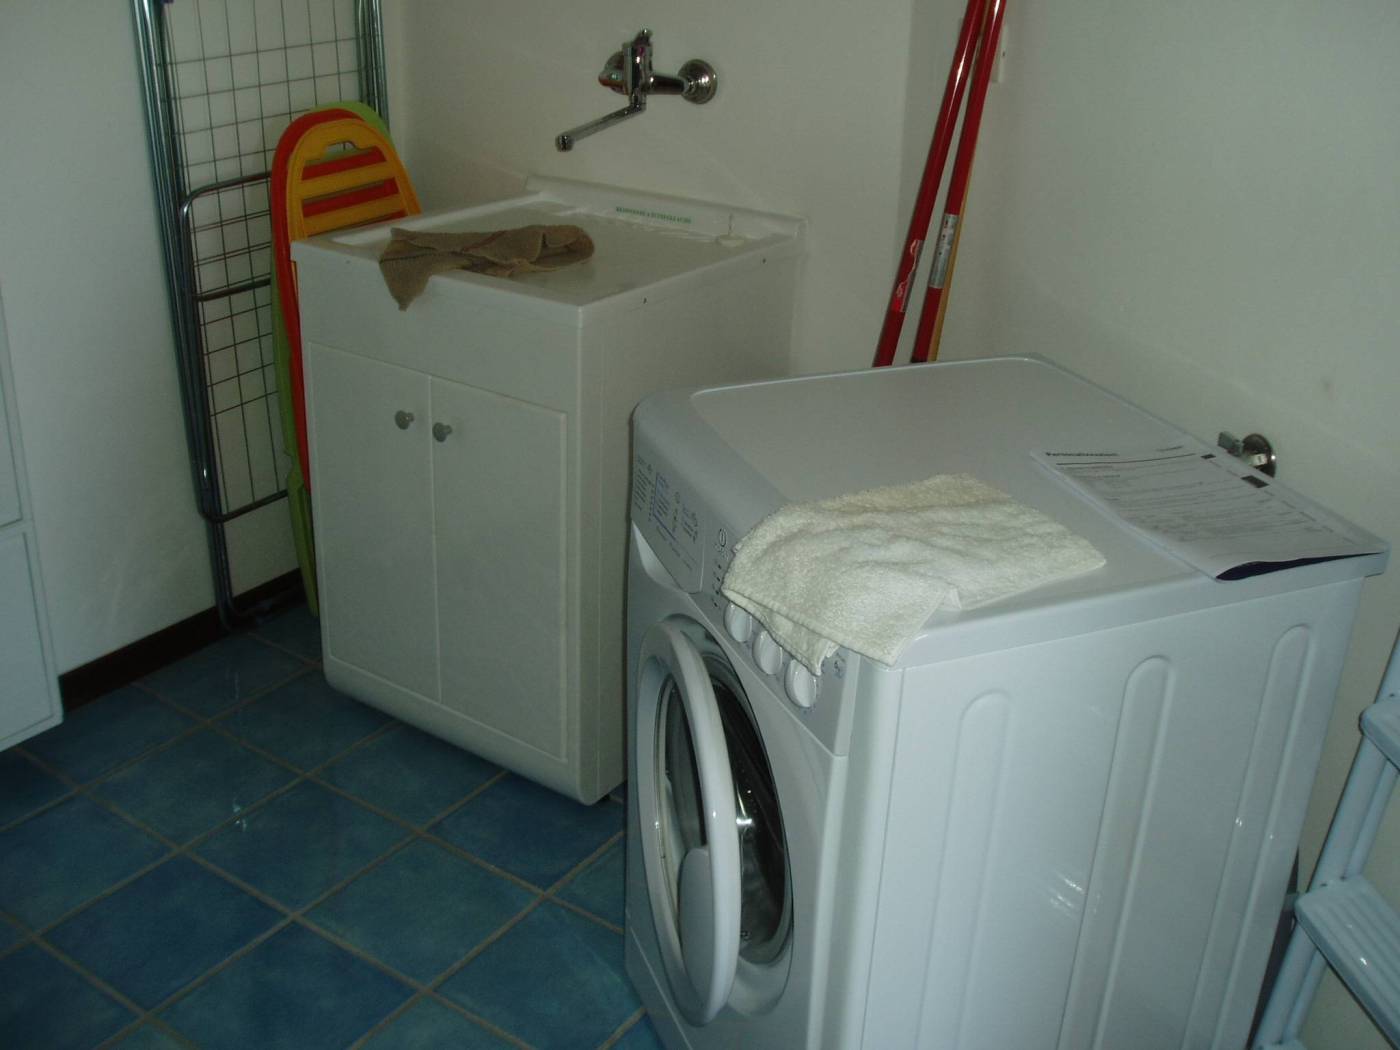 Locale lavanderia